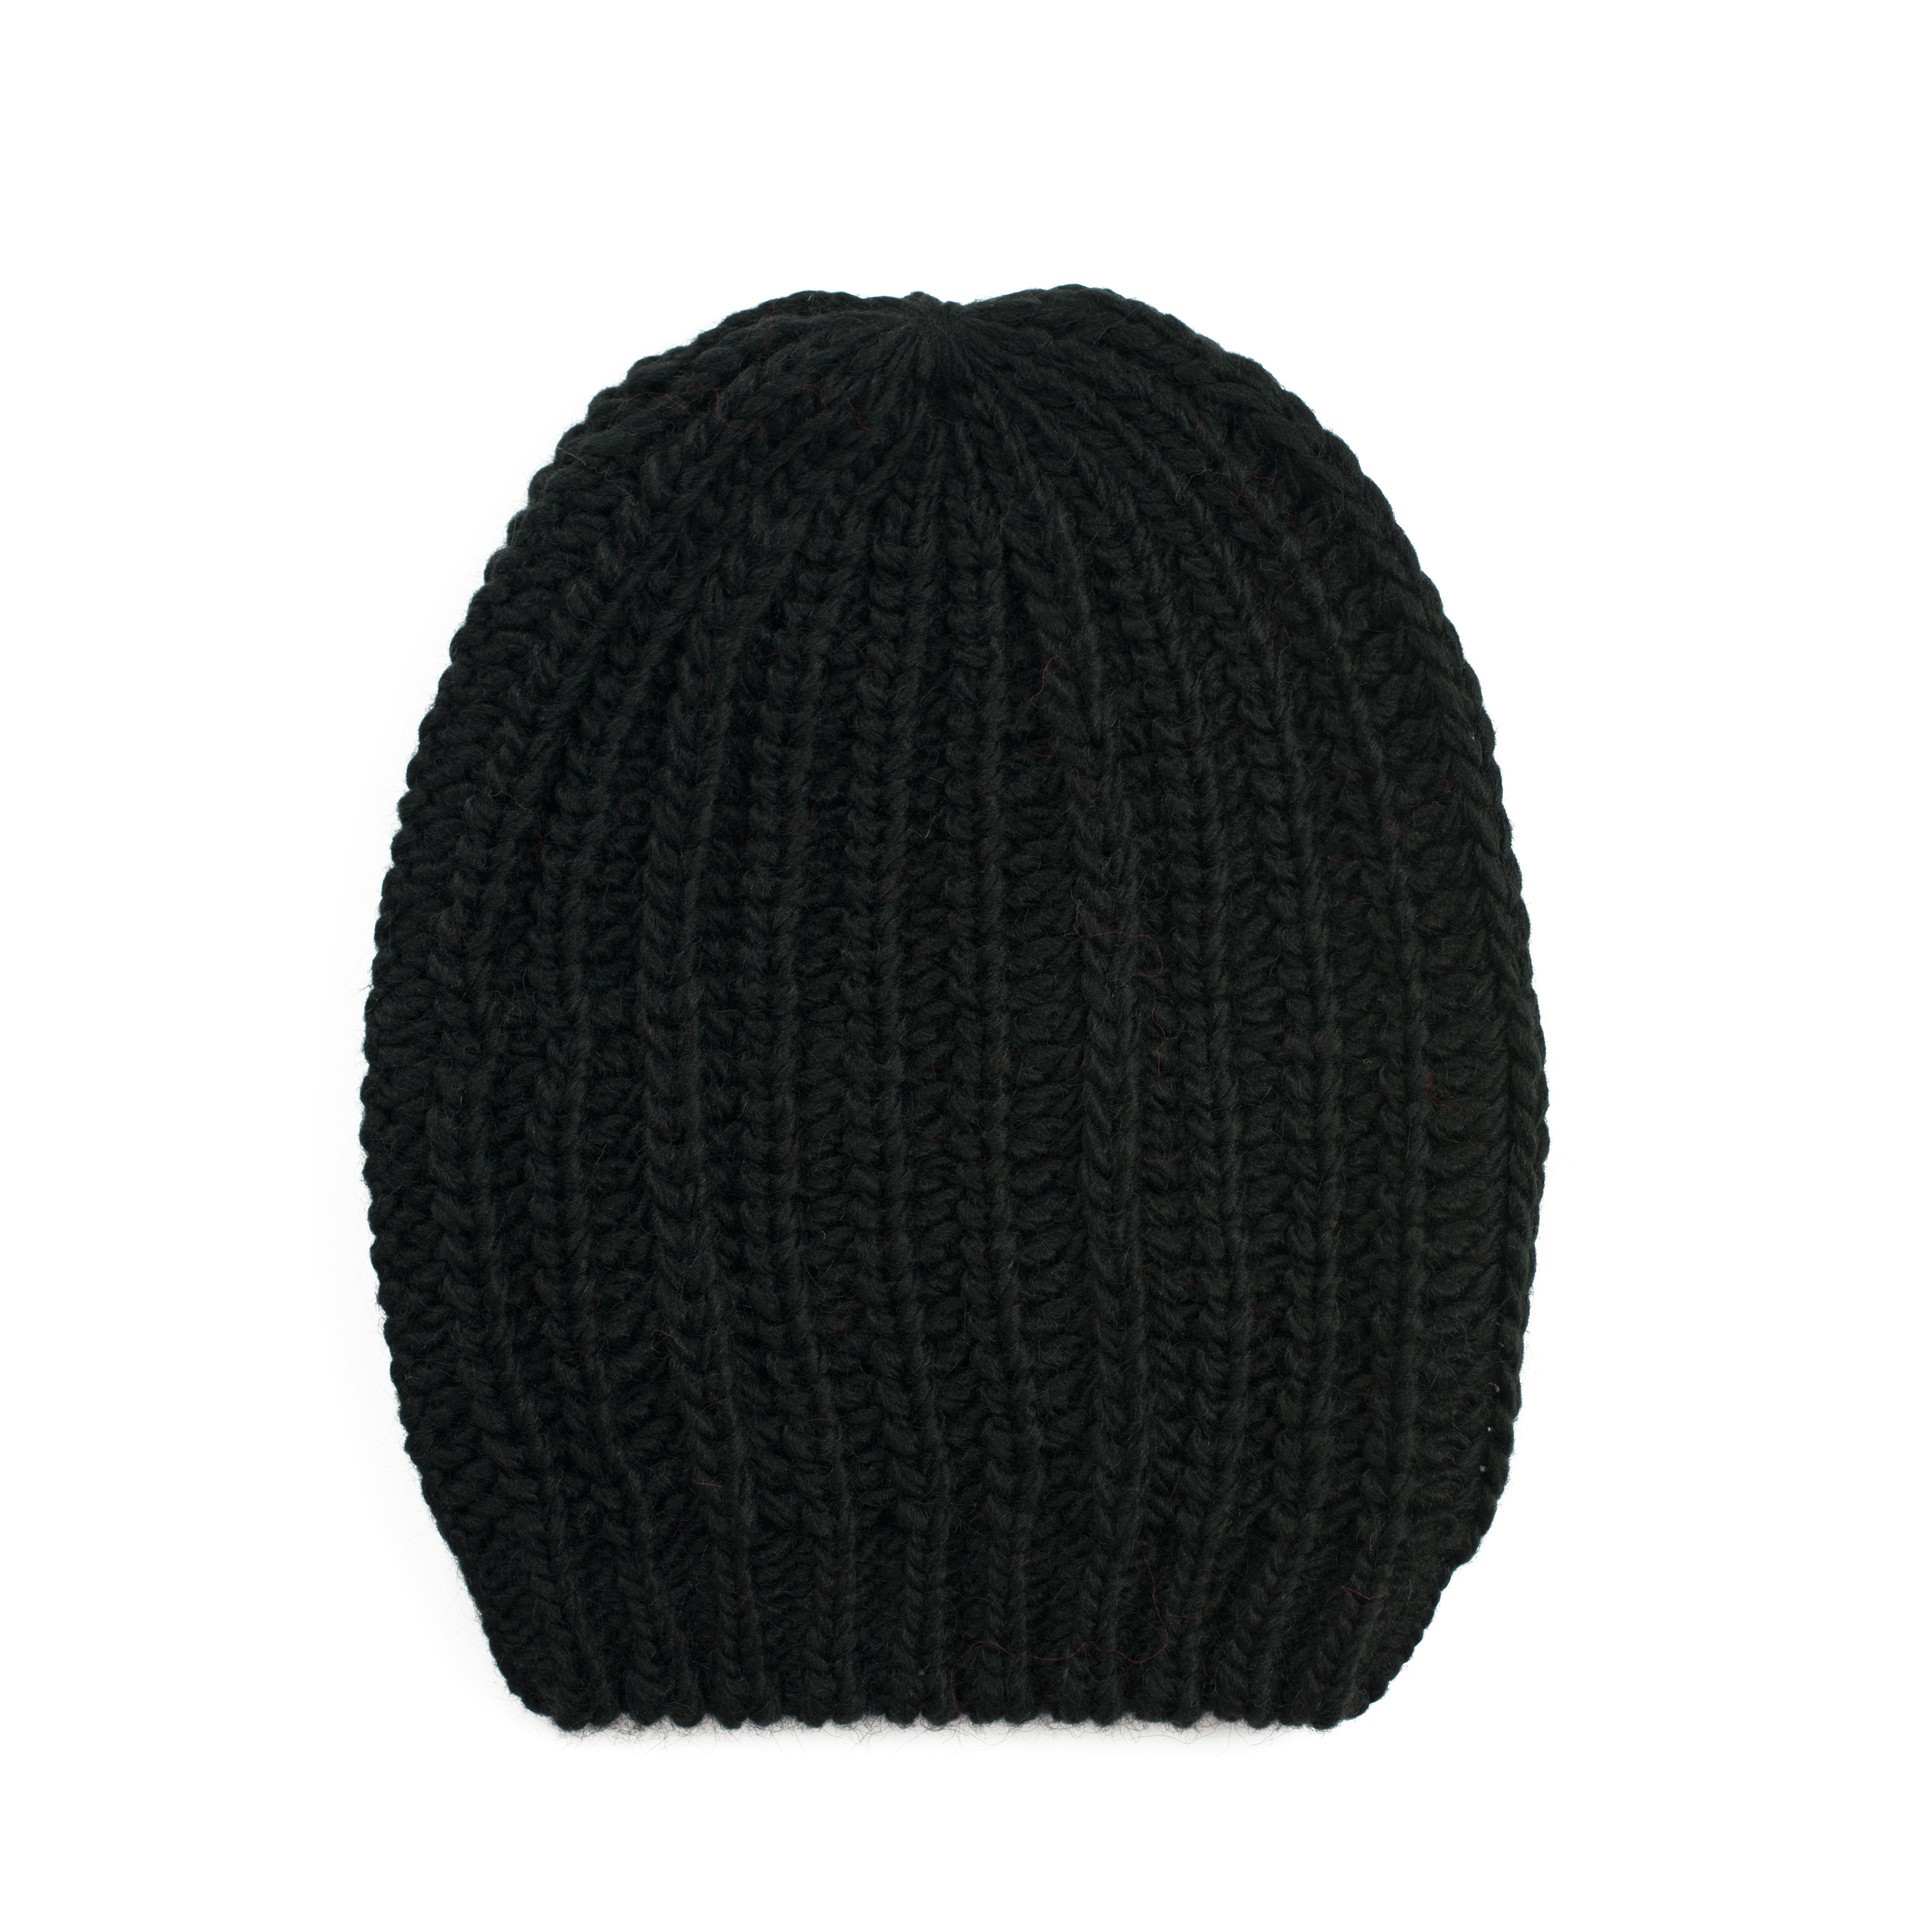 Čepice Cap model 16614362 Black UNI - Art of polo